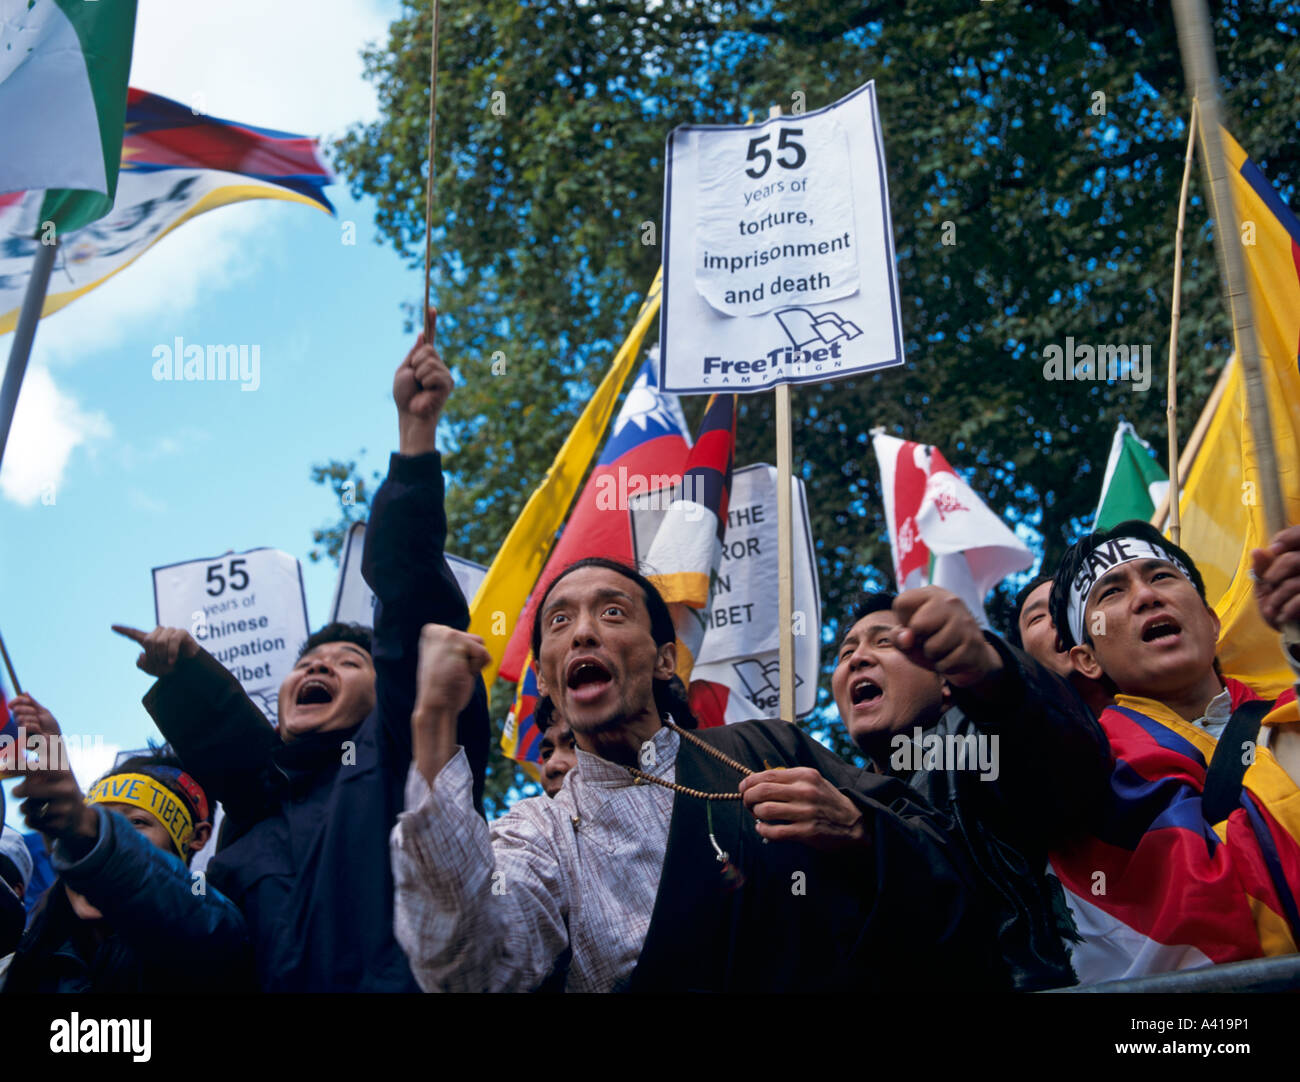 Démo Free Tibet à Londres Royaume-Uni Europe Banque D'Images